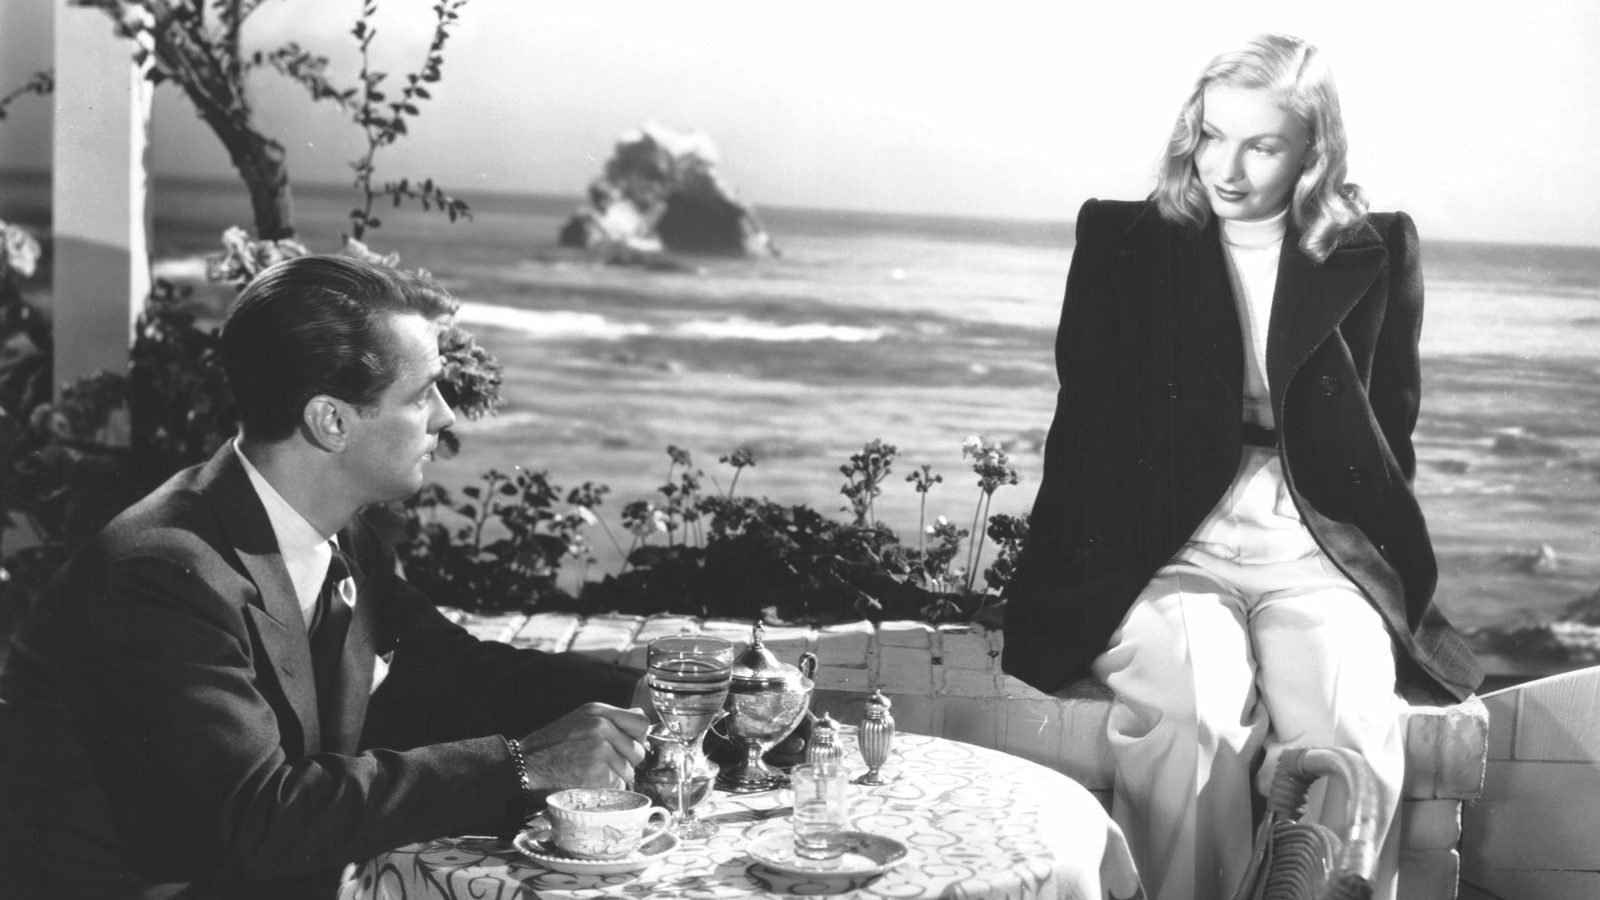 The Blue Dahlia (1946)